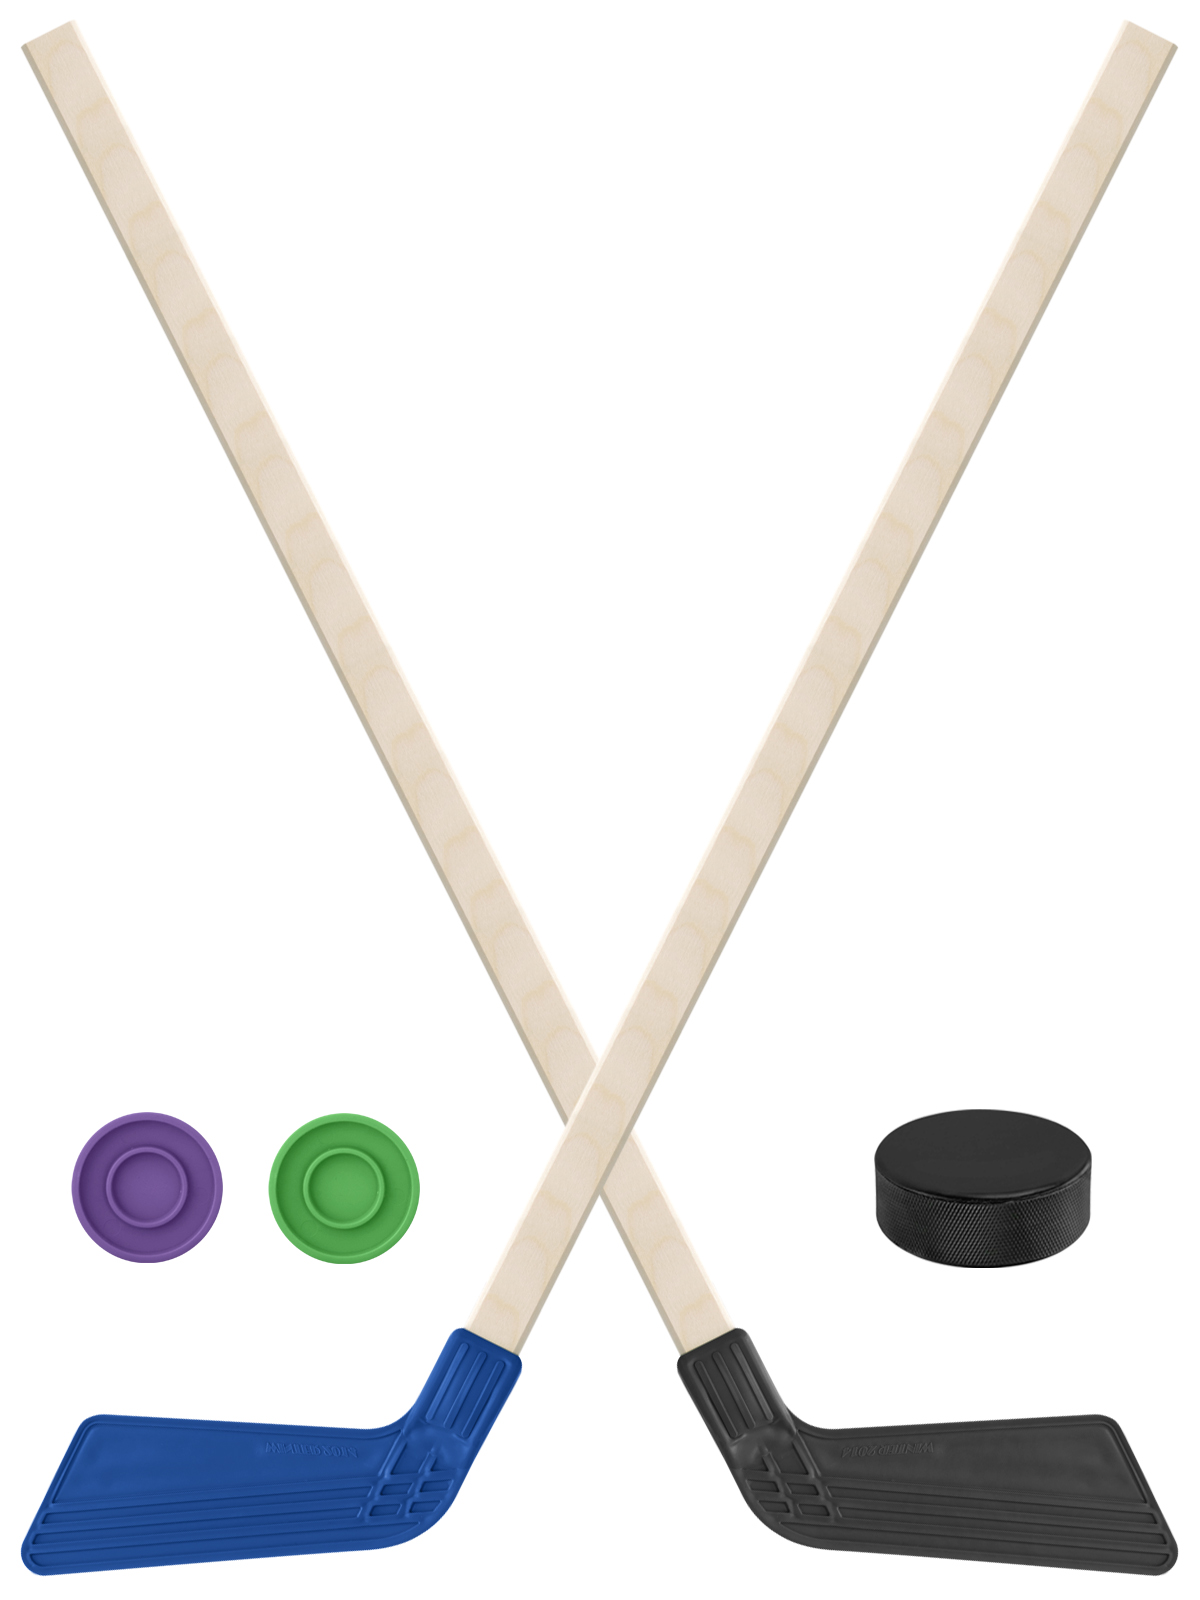 Детский хоккейный набор Задира-плюс Клюшка хоккейная 2шт(син,чёрн)+2шайбы+Шайба 75 мм клюшка флорбольная acito mini 35 orange 65 round прямой 3006 003